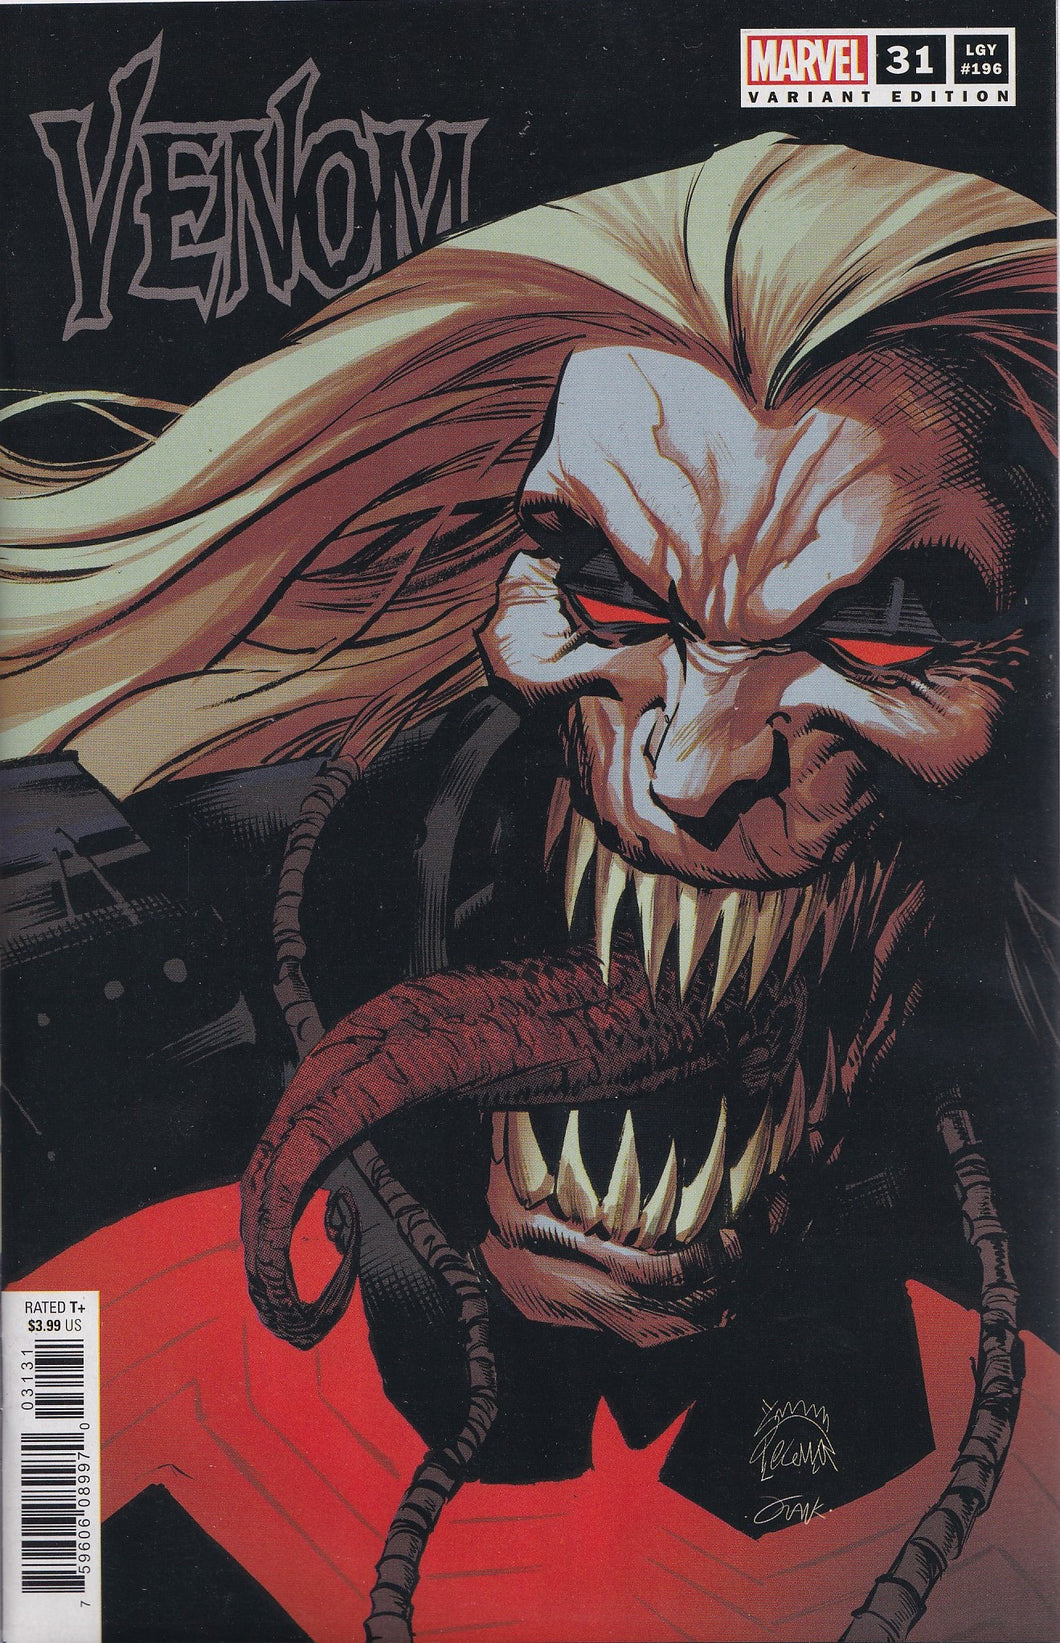 VENOM #31 (STEGMAN VARIANT)(KING IN BLACK)(2020) COMIC BOOK ~ Marvel Comics